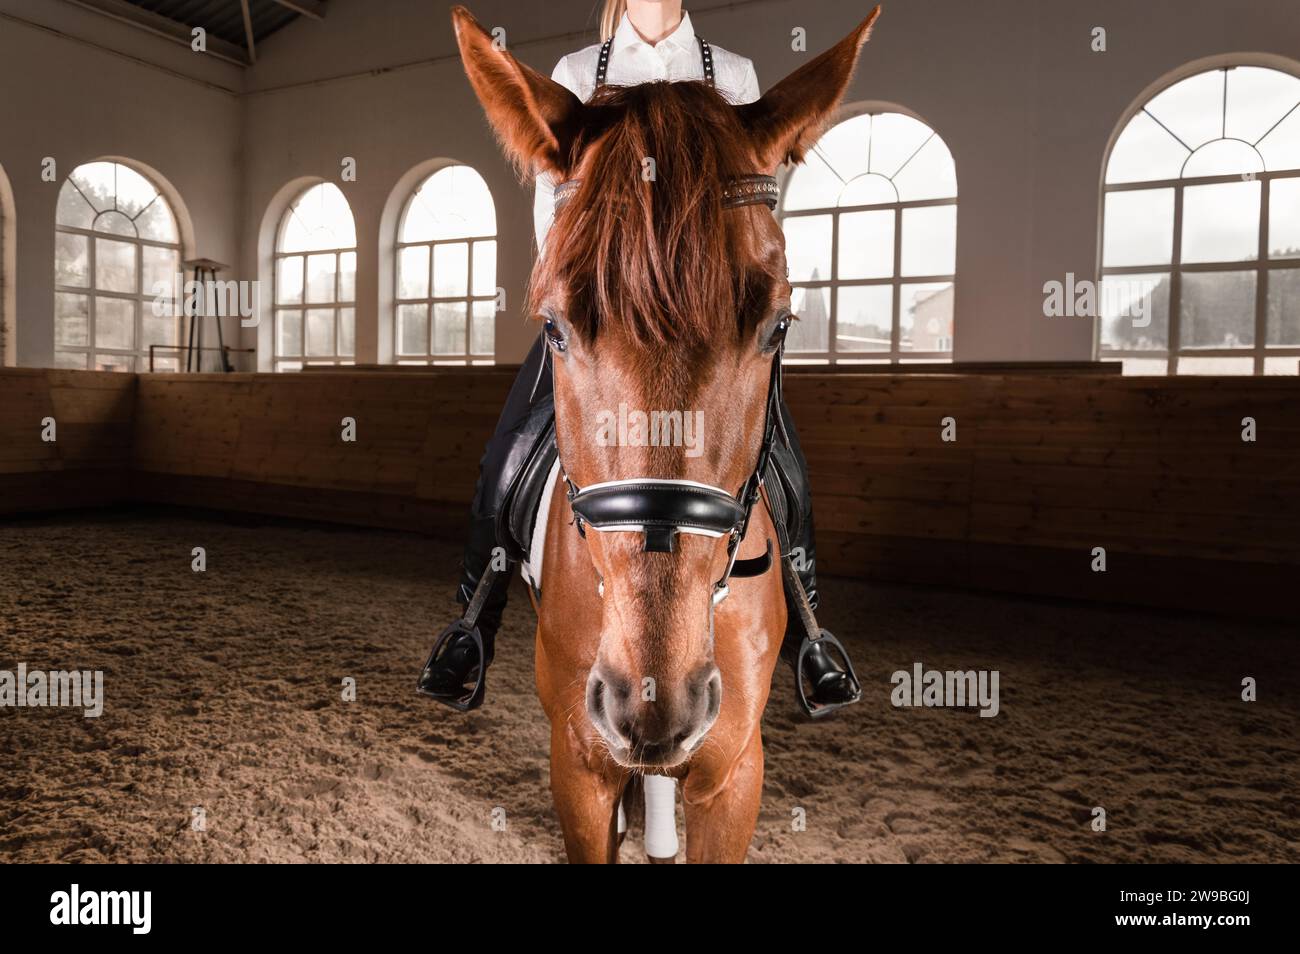 Immagine di una donna che cavalca un cavallo purosangue. Lo sfondo è un'arena di corse. Supporti misti Foto Stock